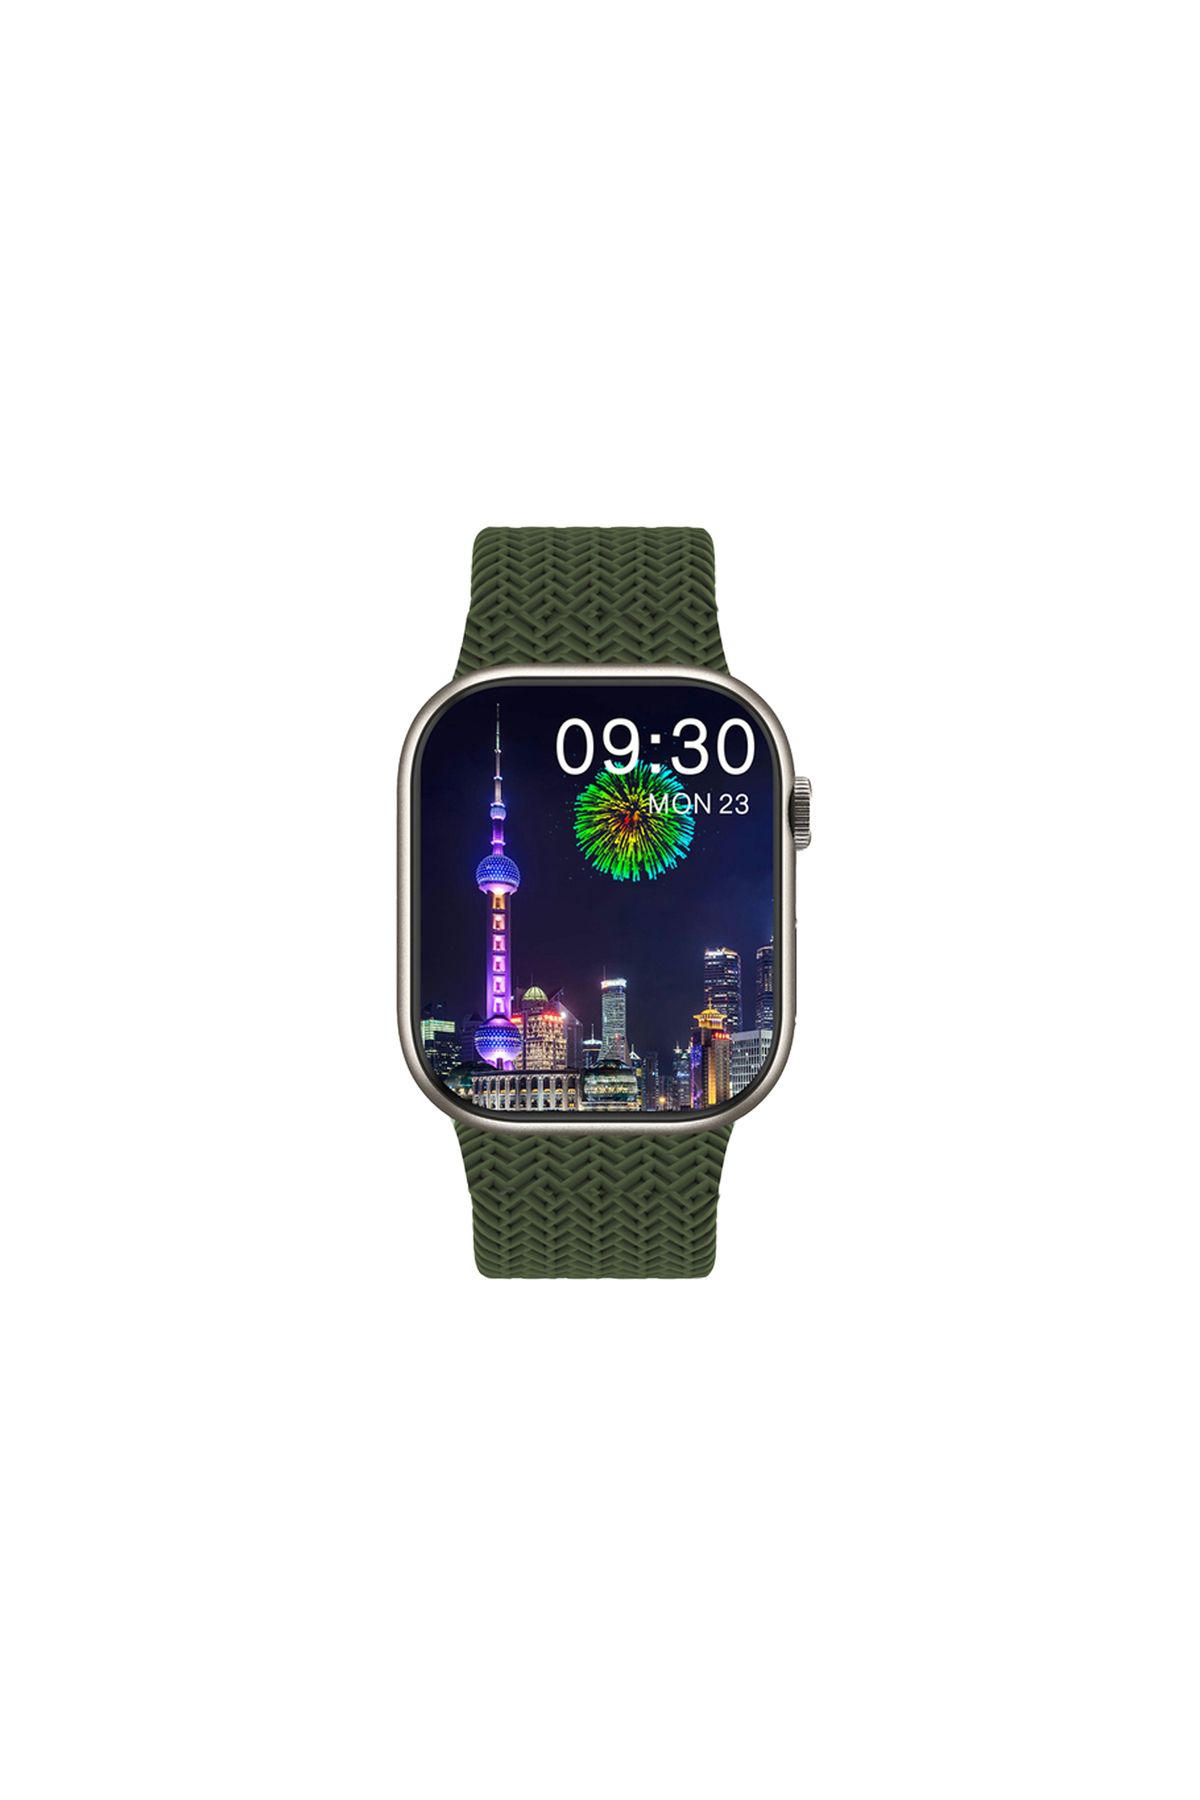 Winex Mobile Winex 2024 Watch 9 Pro Amoled Ekran Android Ios Uyumlu Akıllı Saat Yeşil